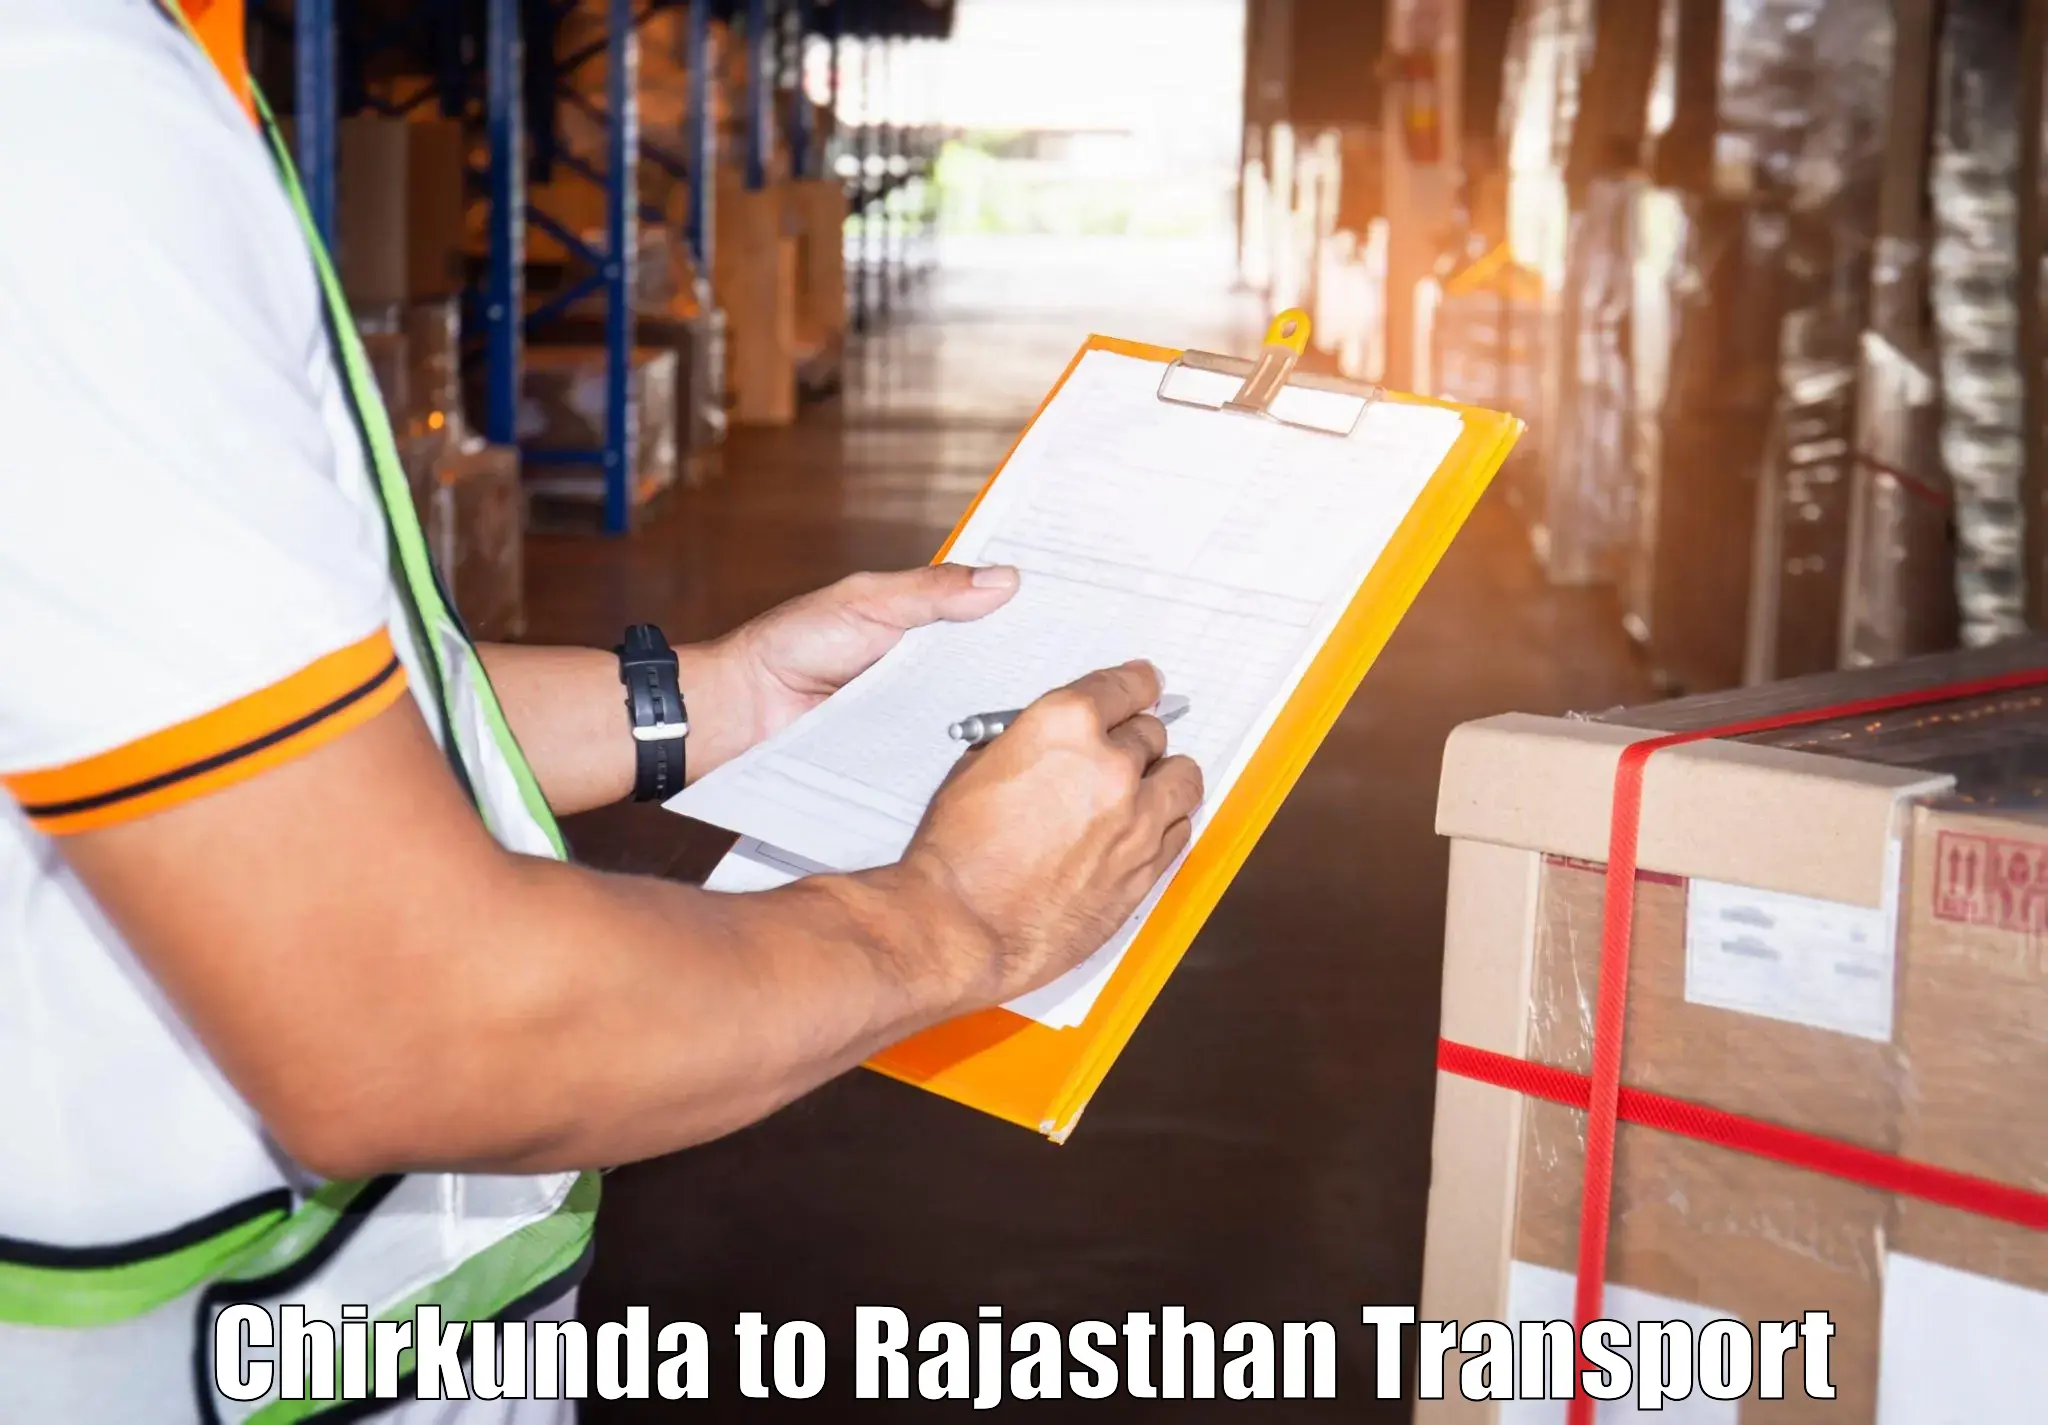 Cargo transport services in Chirkunda to Jaisalmer